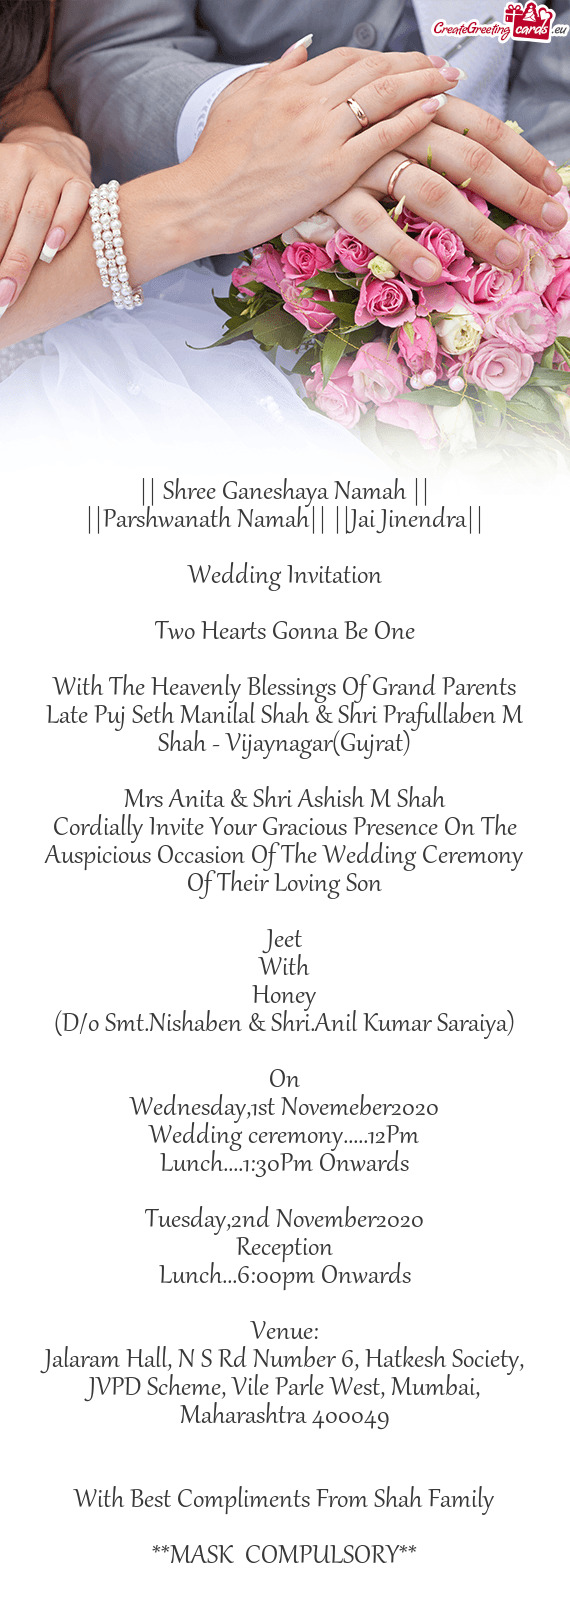 Late Puj Seth Manilal Shah & Shri Prafullaben M Shah - Vijaynagar(Gujrat)